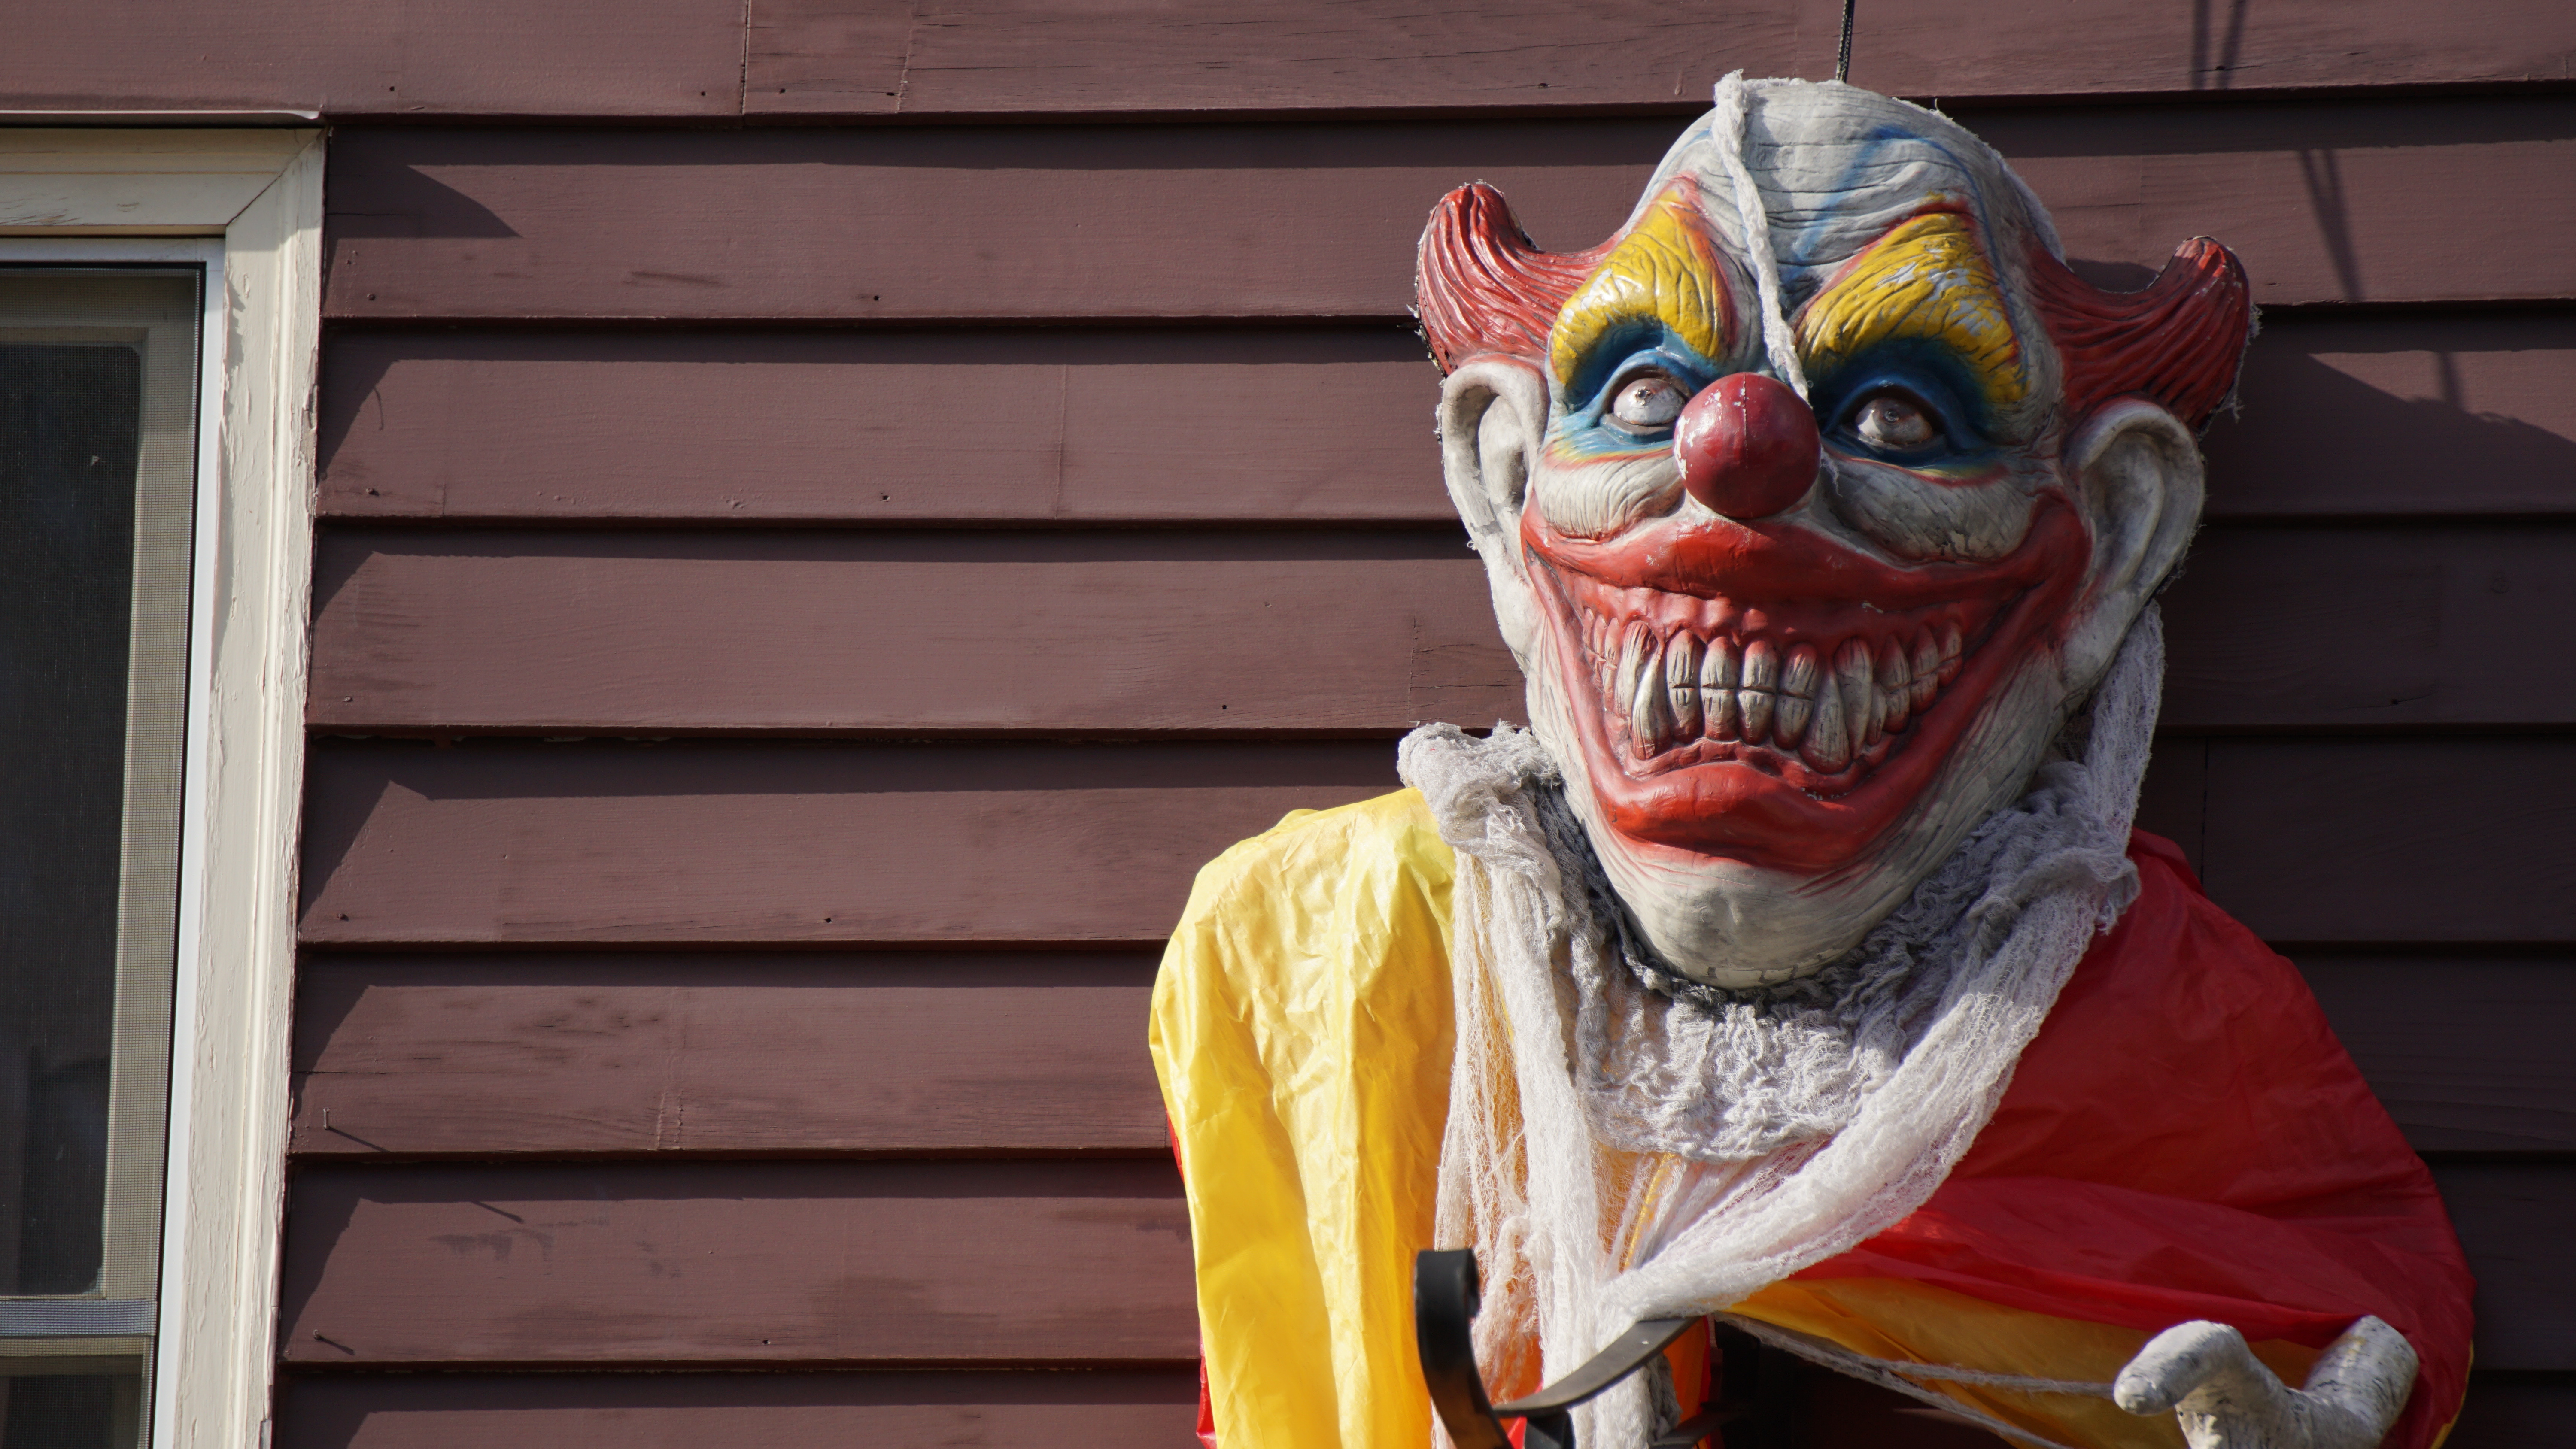 An evil Halloween clown costume